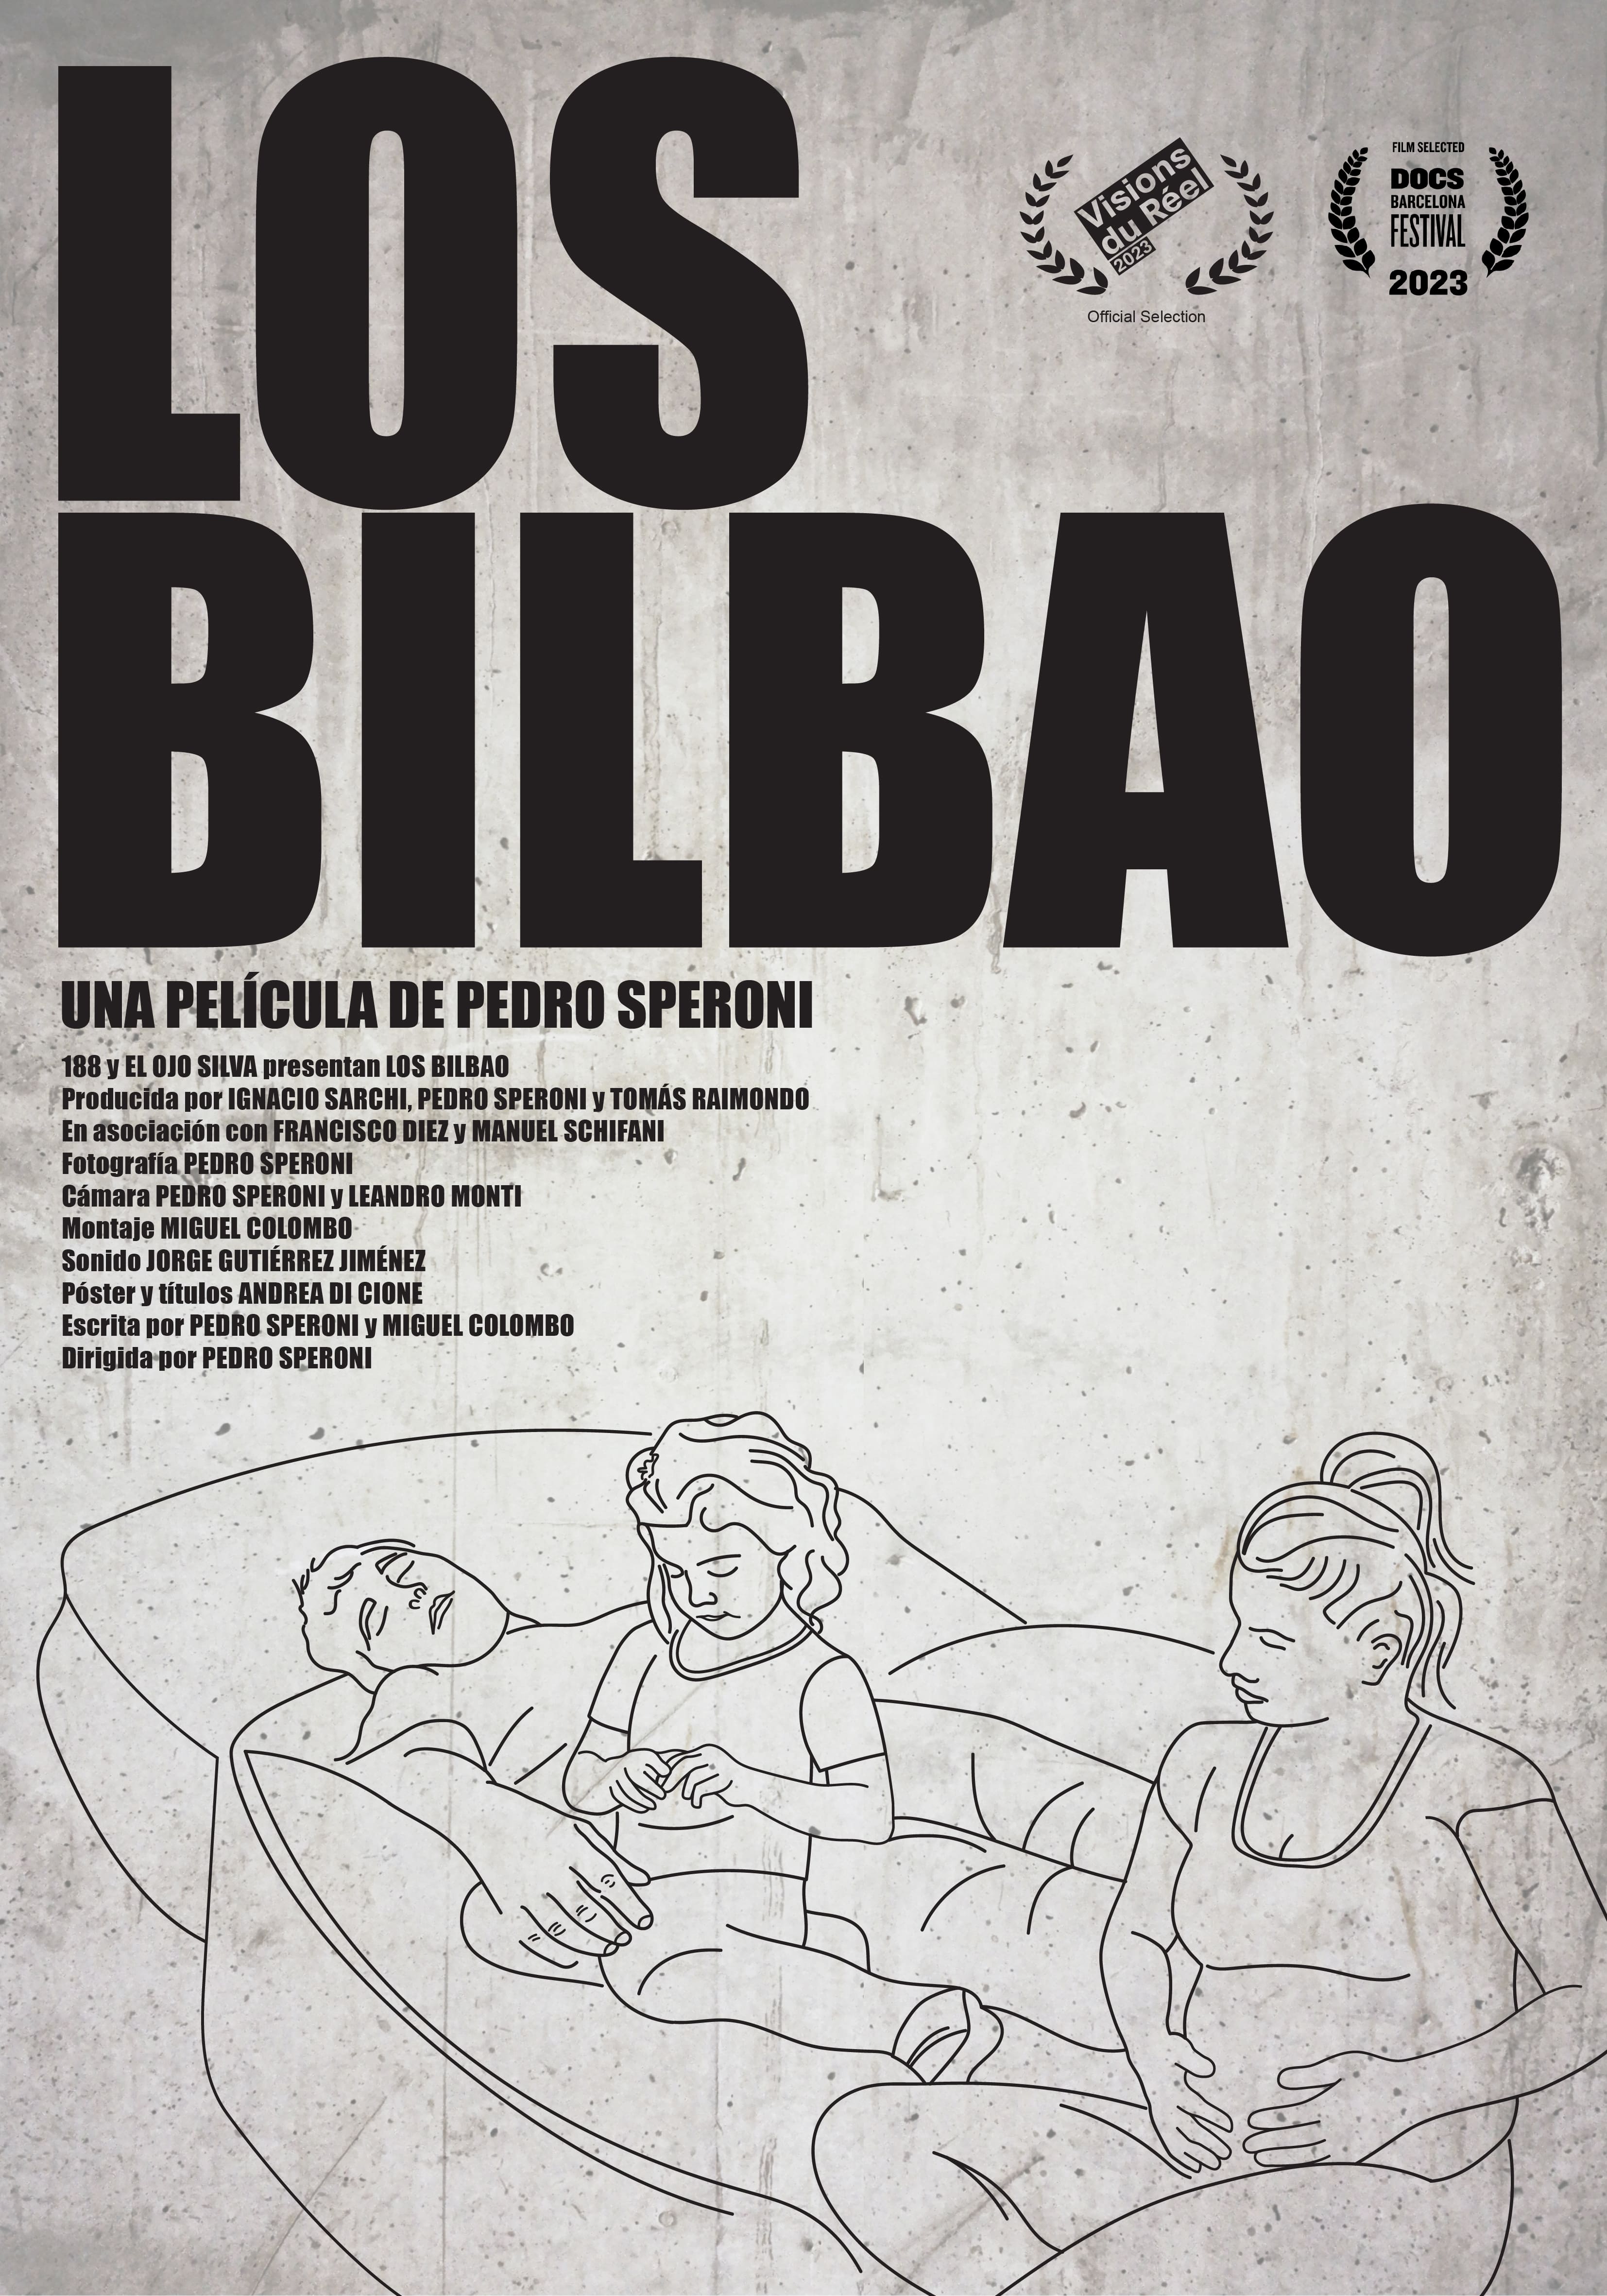 The Bilbao Family